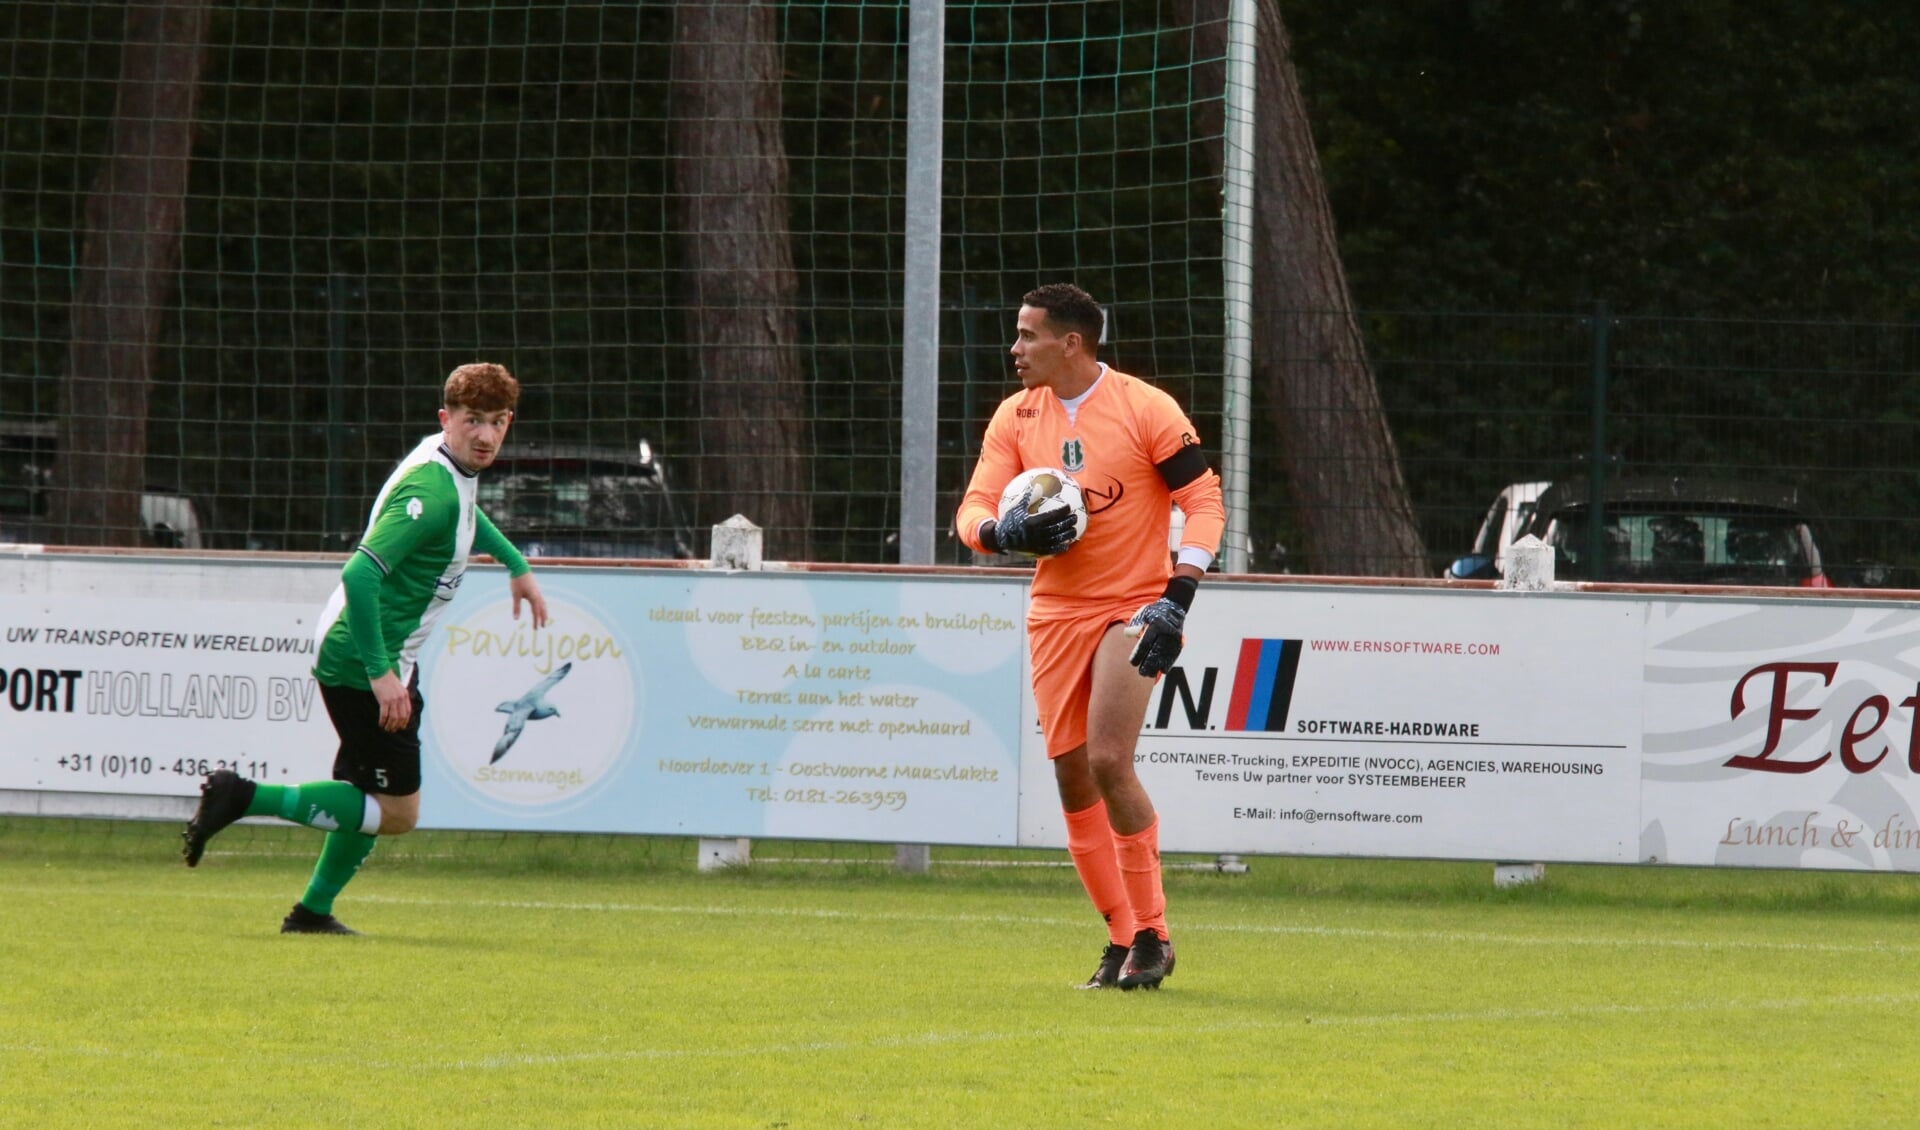 Doelman Linber van der Horst kreeg drie goals te slikken in de uitbeurt van OVV bij DVO '32 (Archieffoto: Wil van Balen)